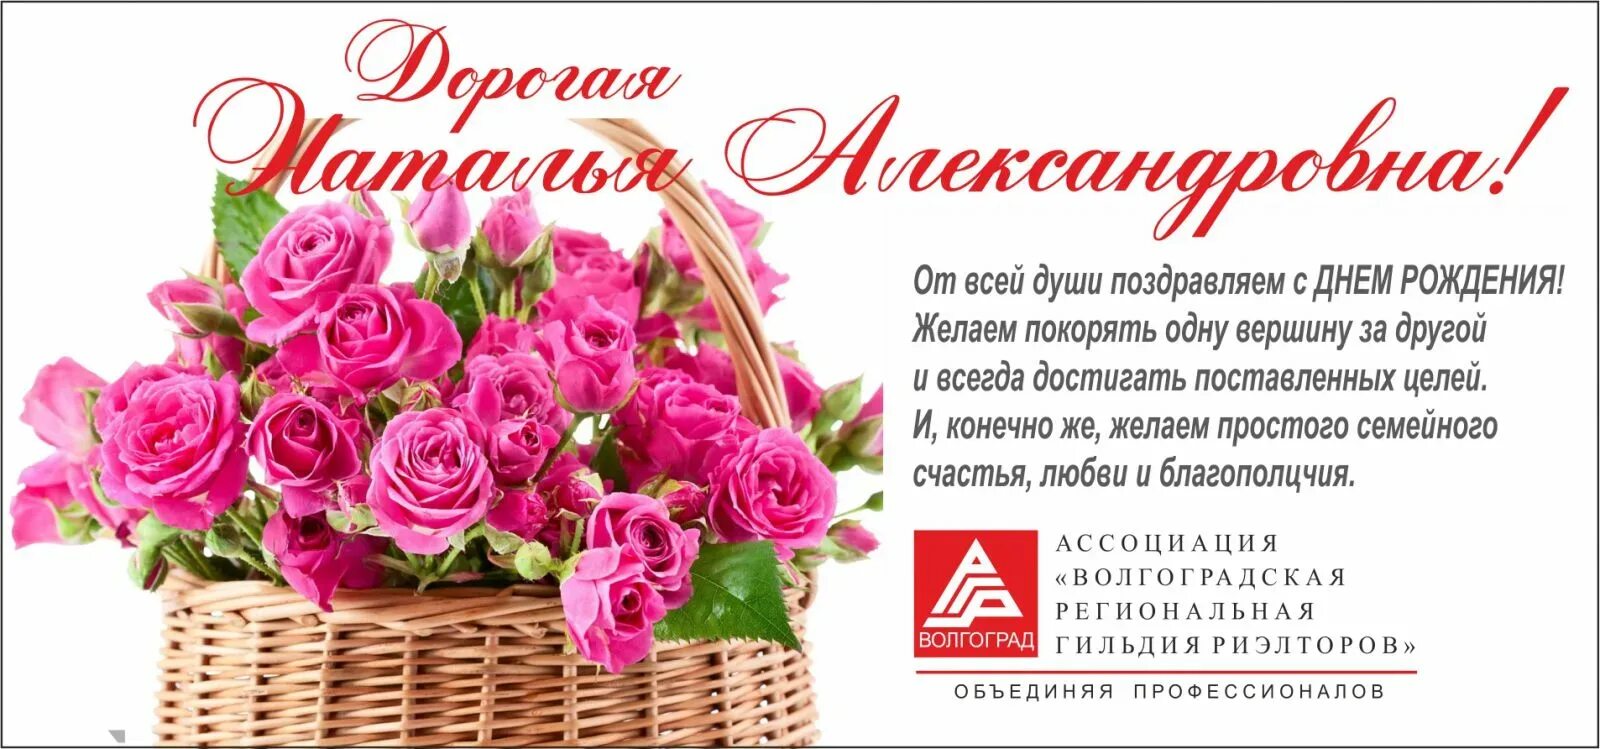 Поздравление наталье александровне. Поздравления с днём рождения Наталье Александровне.